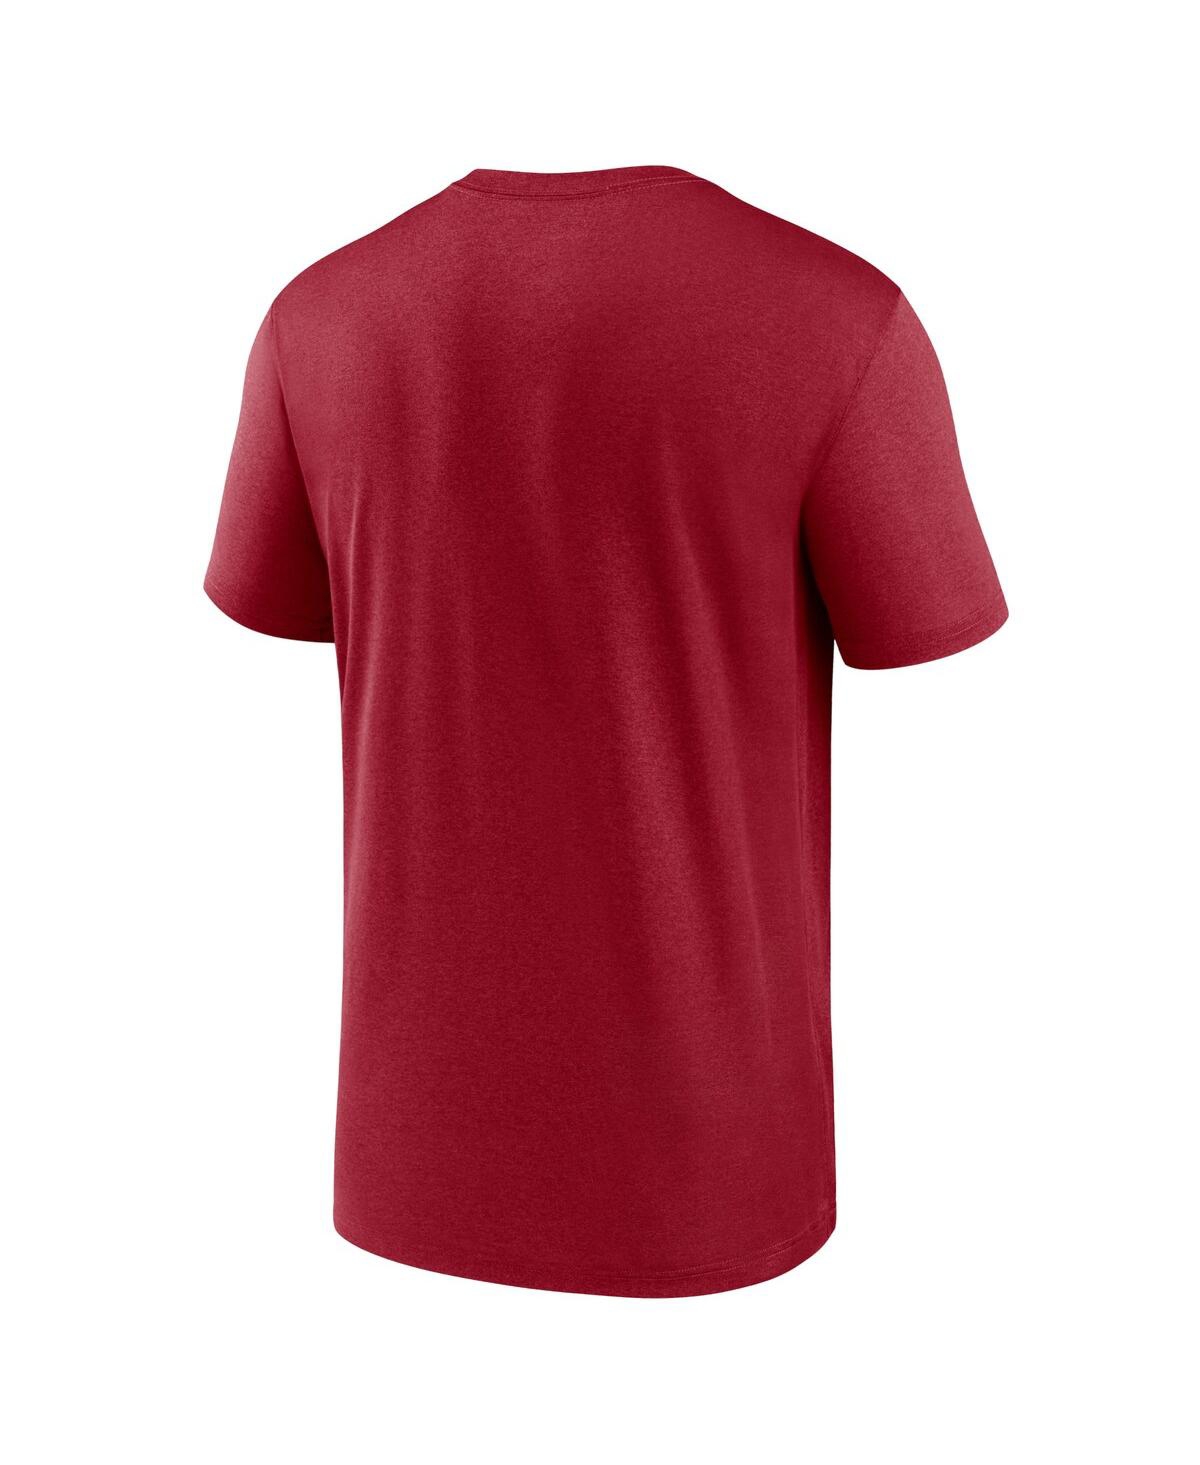 Shop Nike Men's  Cardinal Arizona Cardinals Legend Logo Performance T-shirt